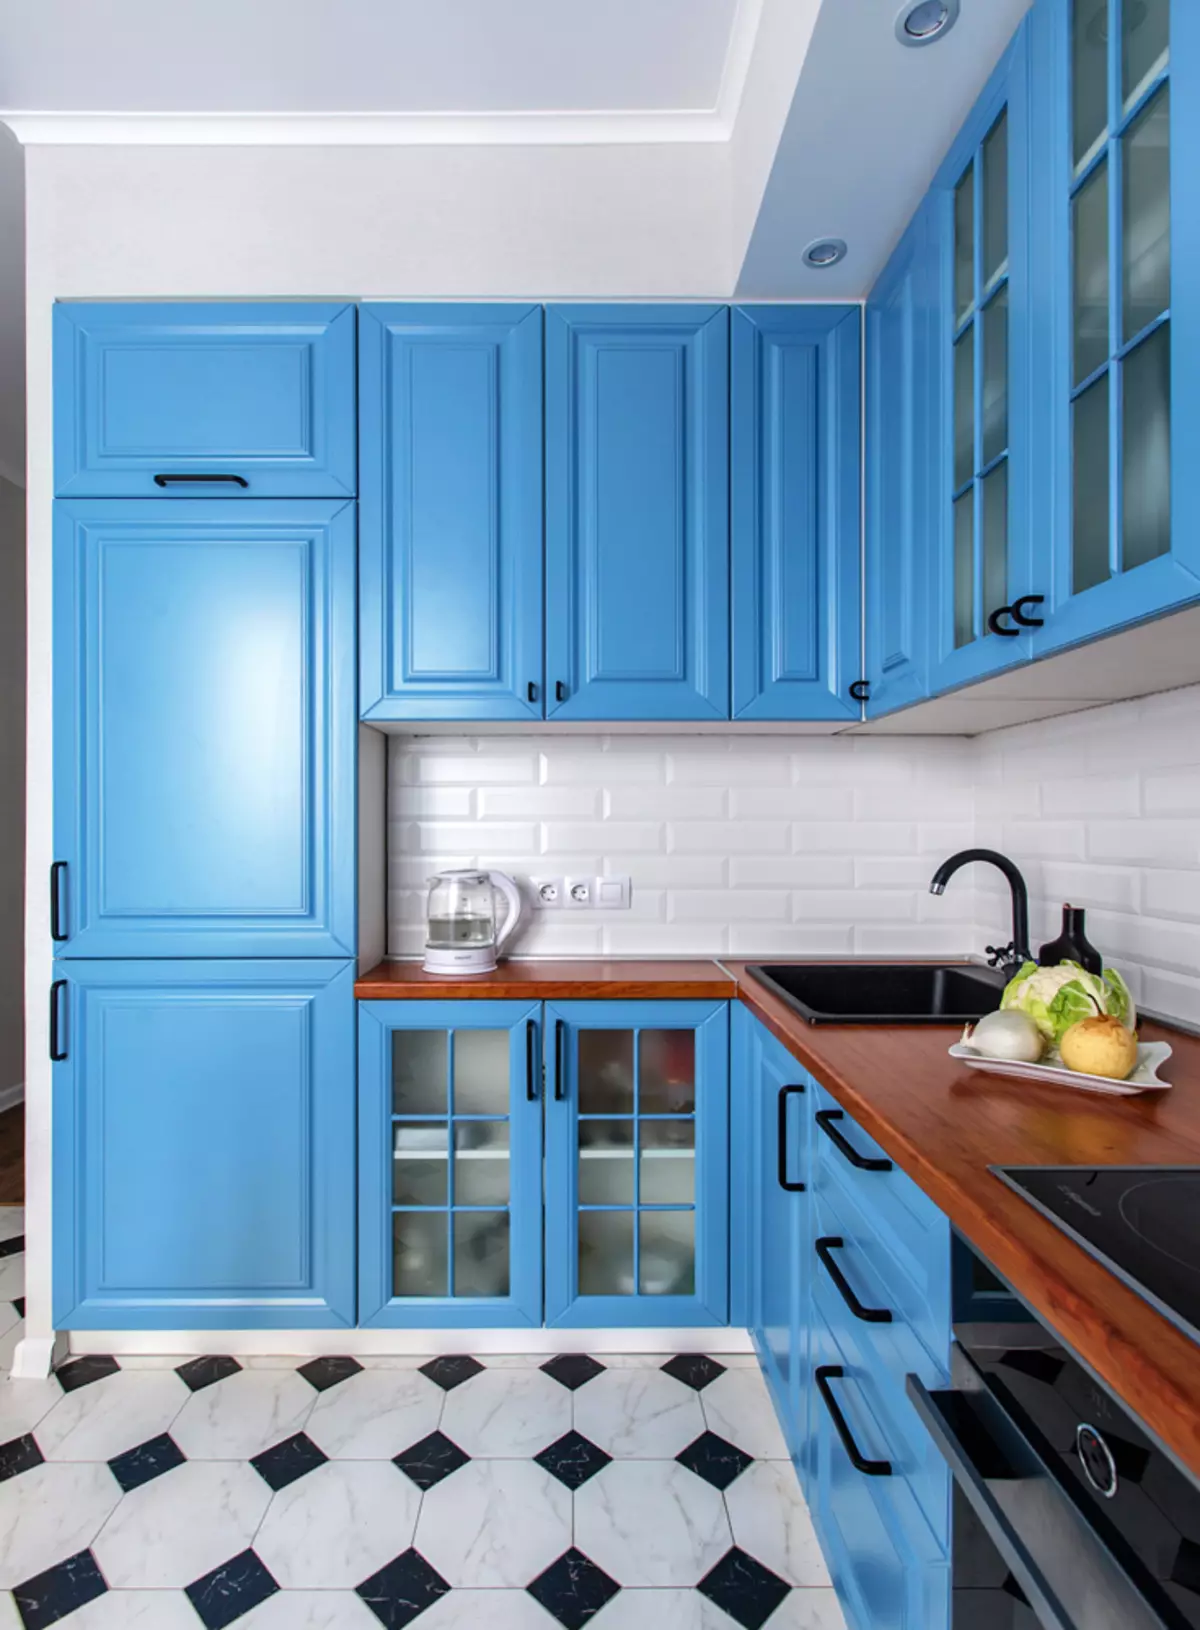 藍廚房（82張照片）：在藍色廚房套裝內部合併哪種顏色？淺藍色和深藍色色調的廚房設計 9555_69